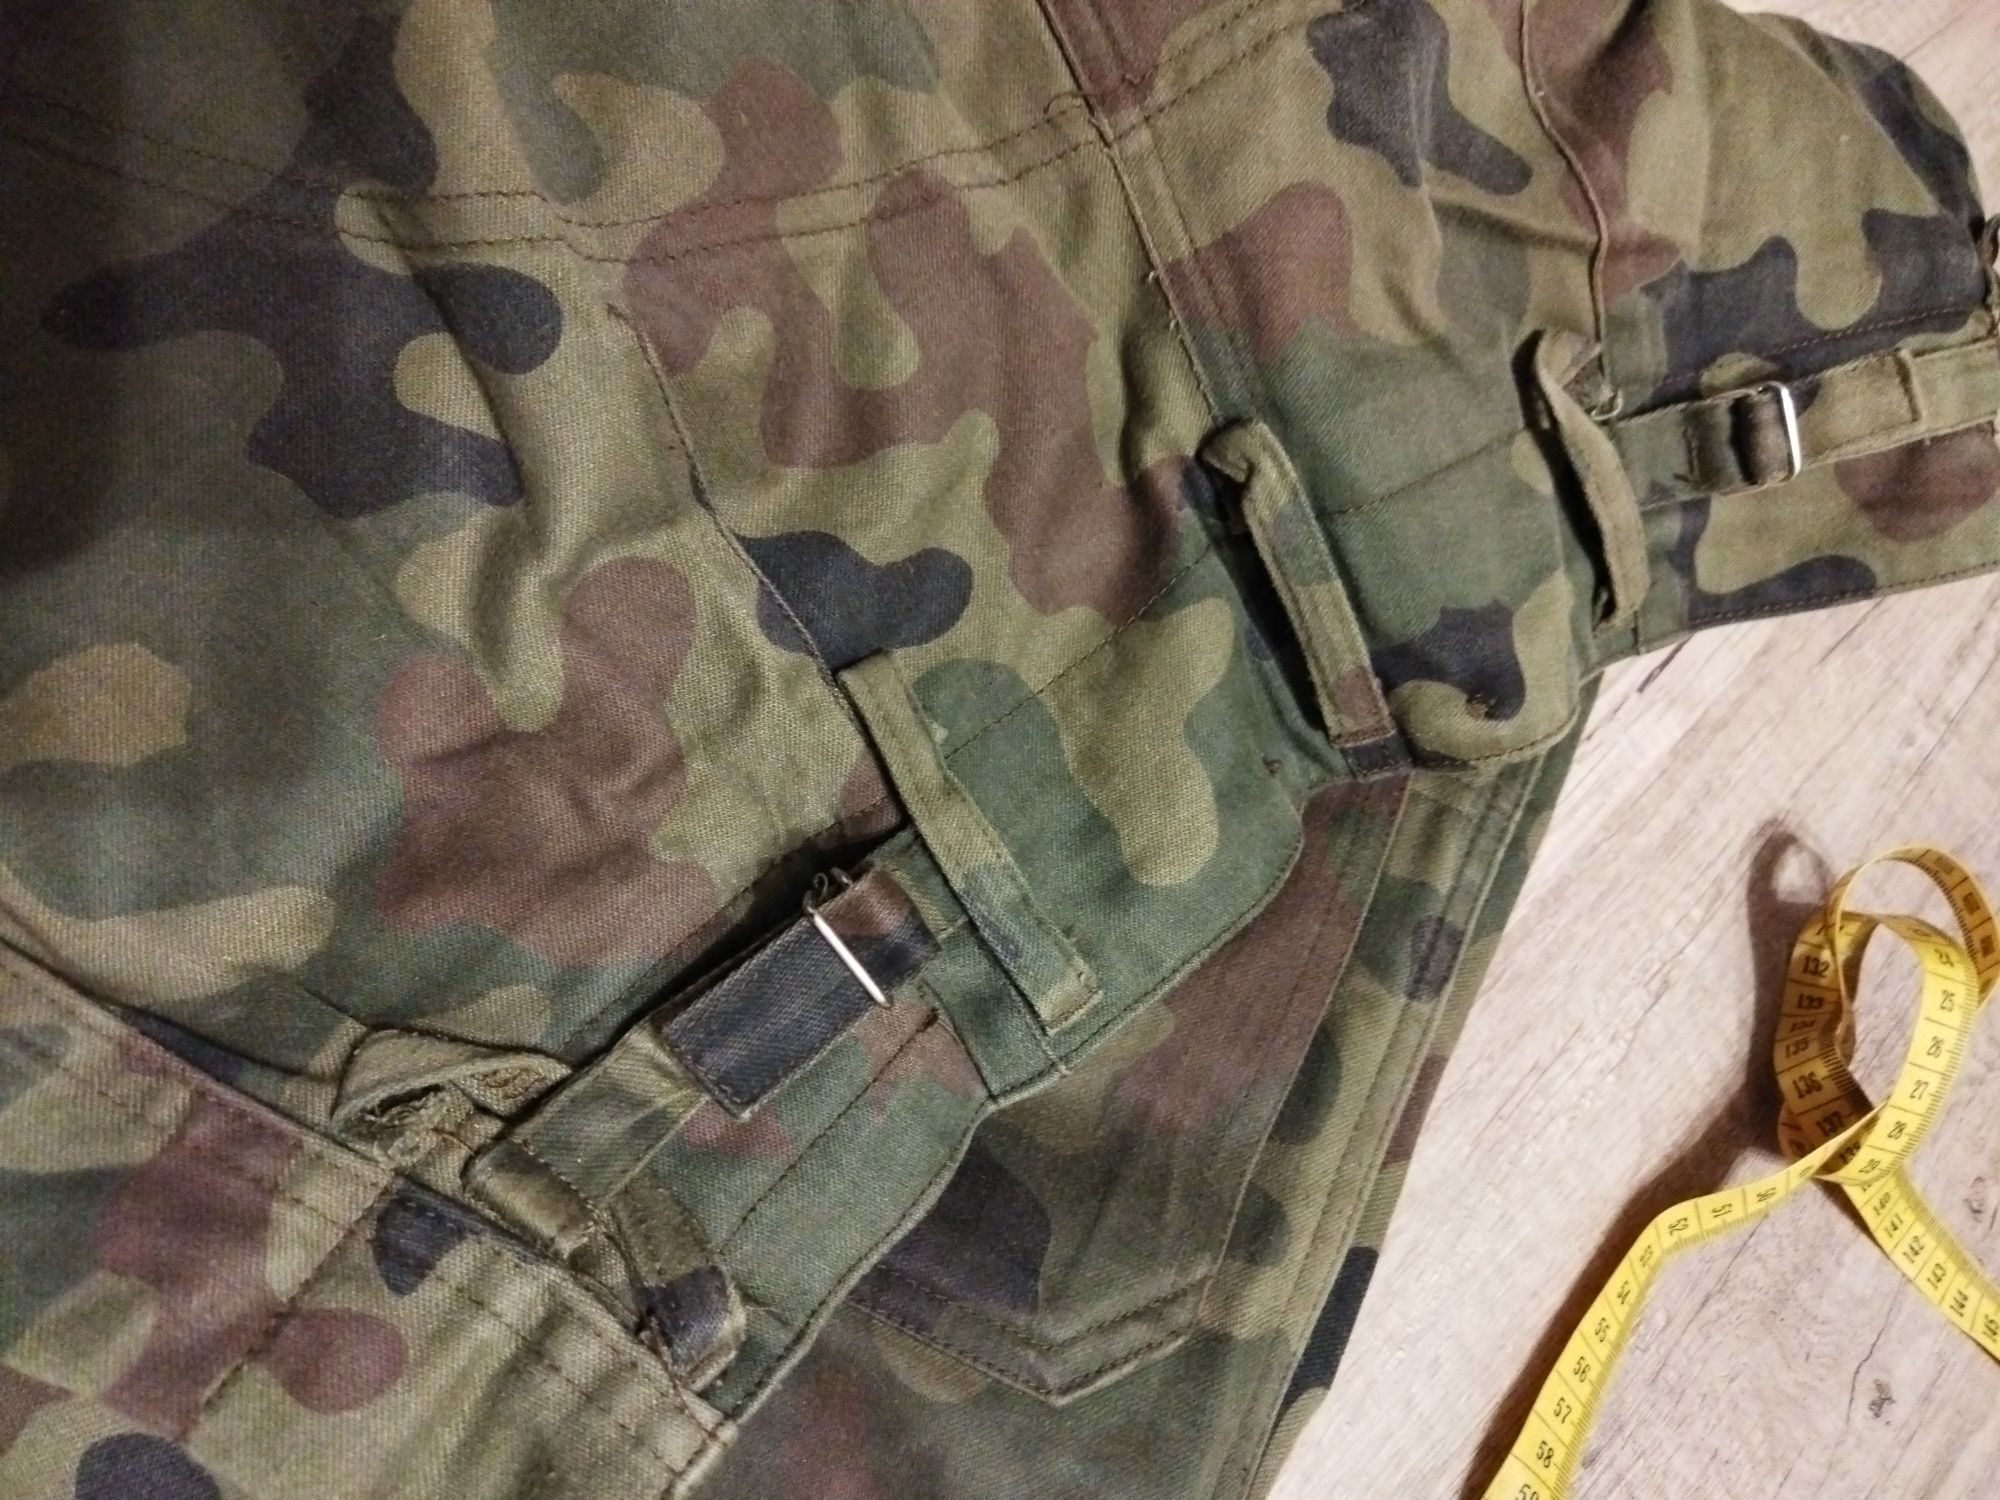 Wielosezonowe spodnie wojskowe.